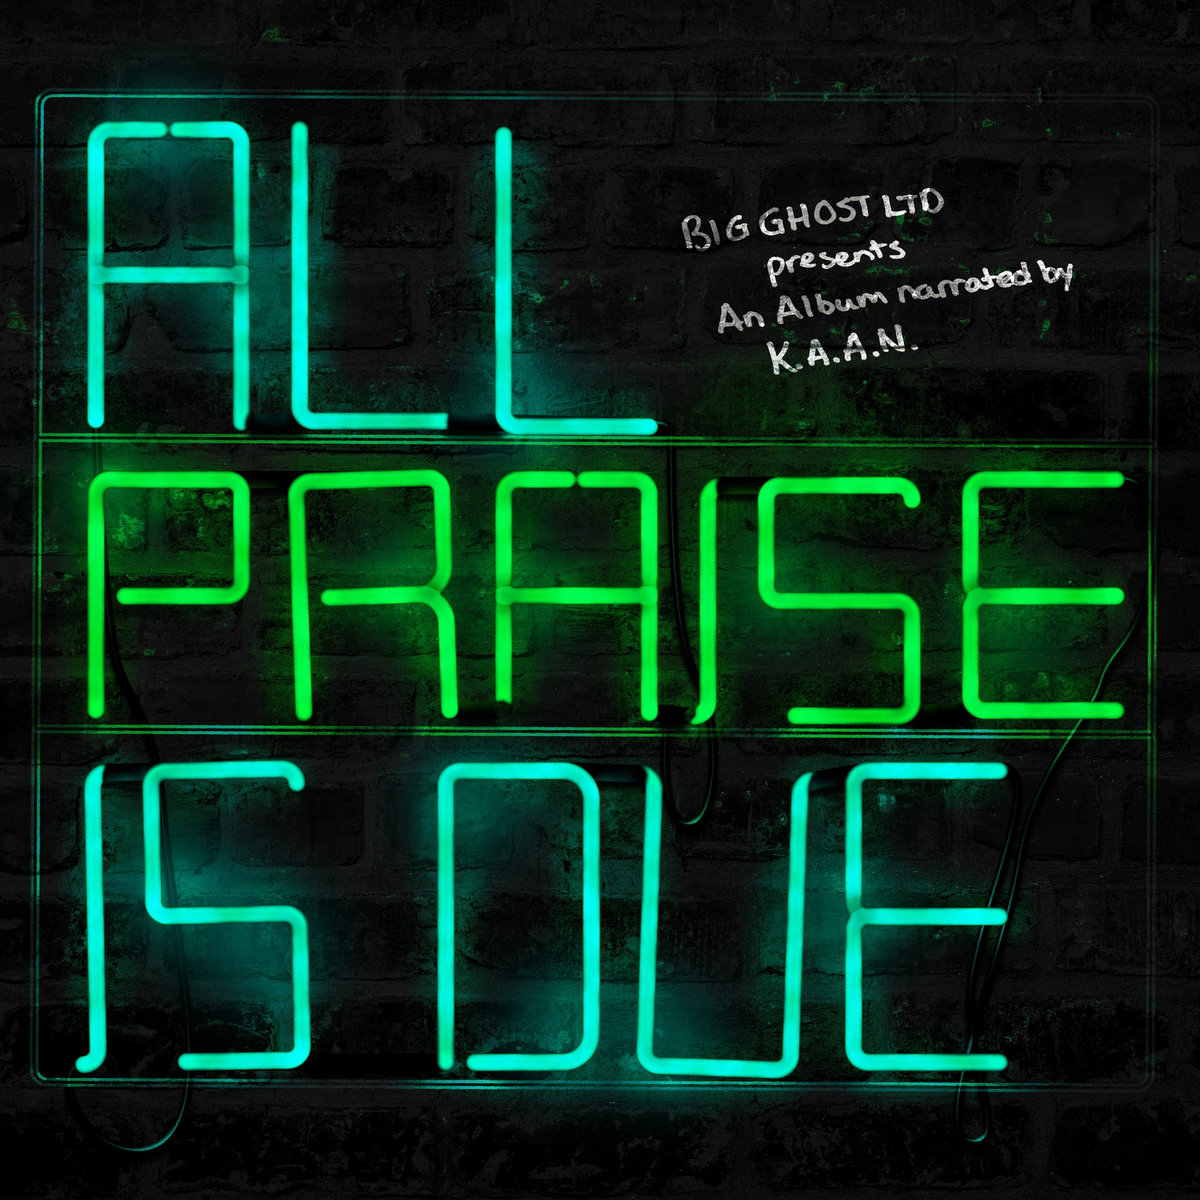 All_praise_is_due_k.a.a.n._big_ghost_ltd